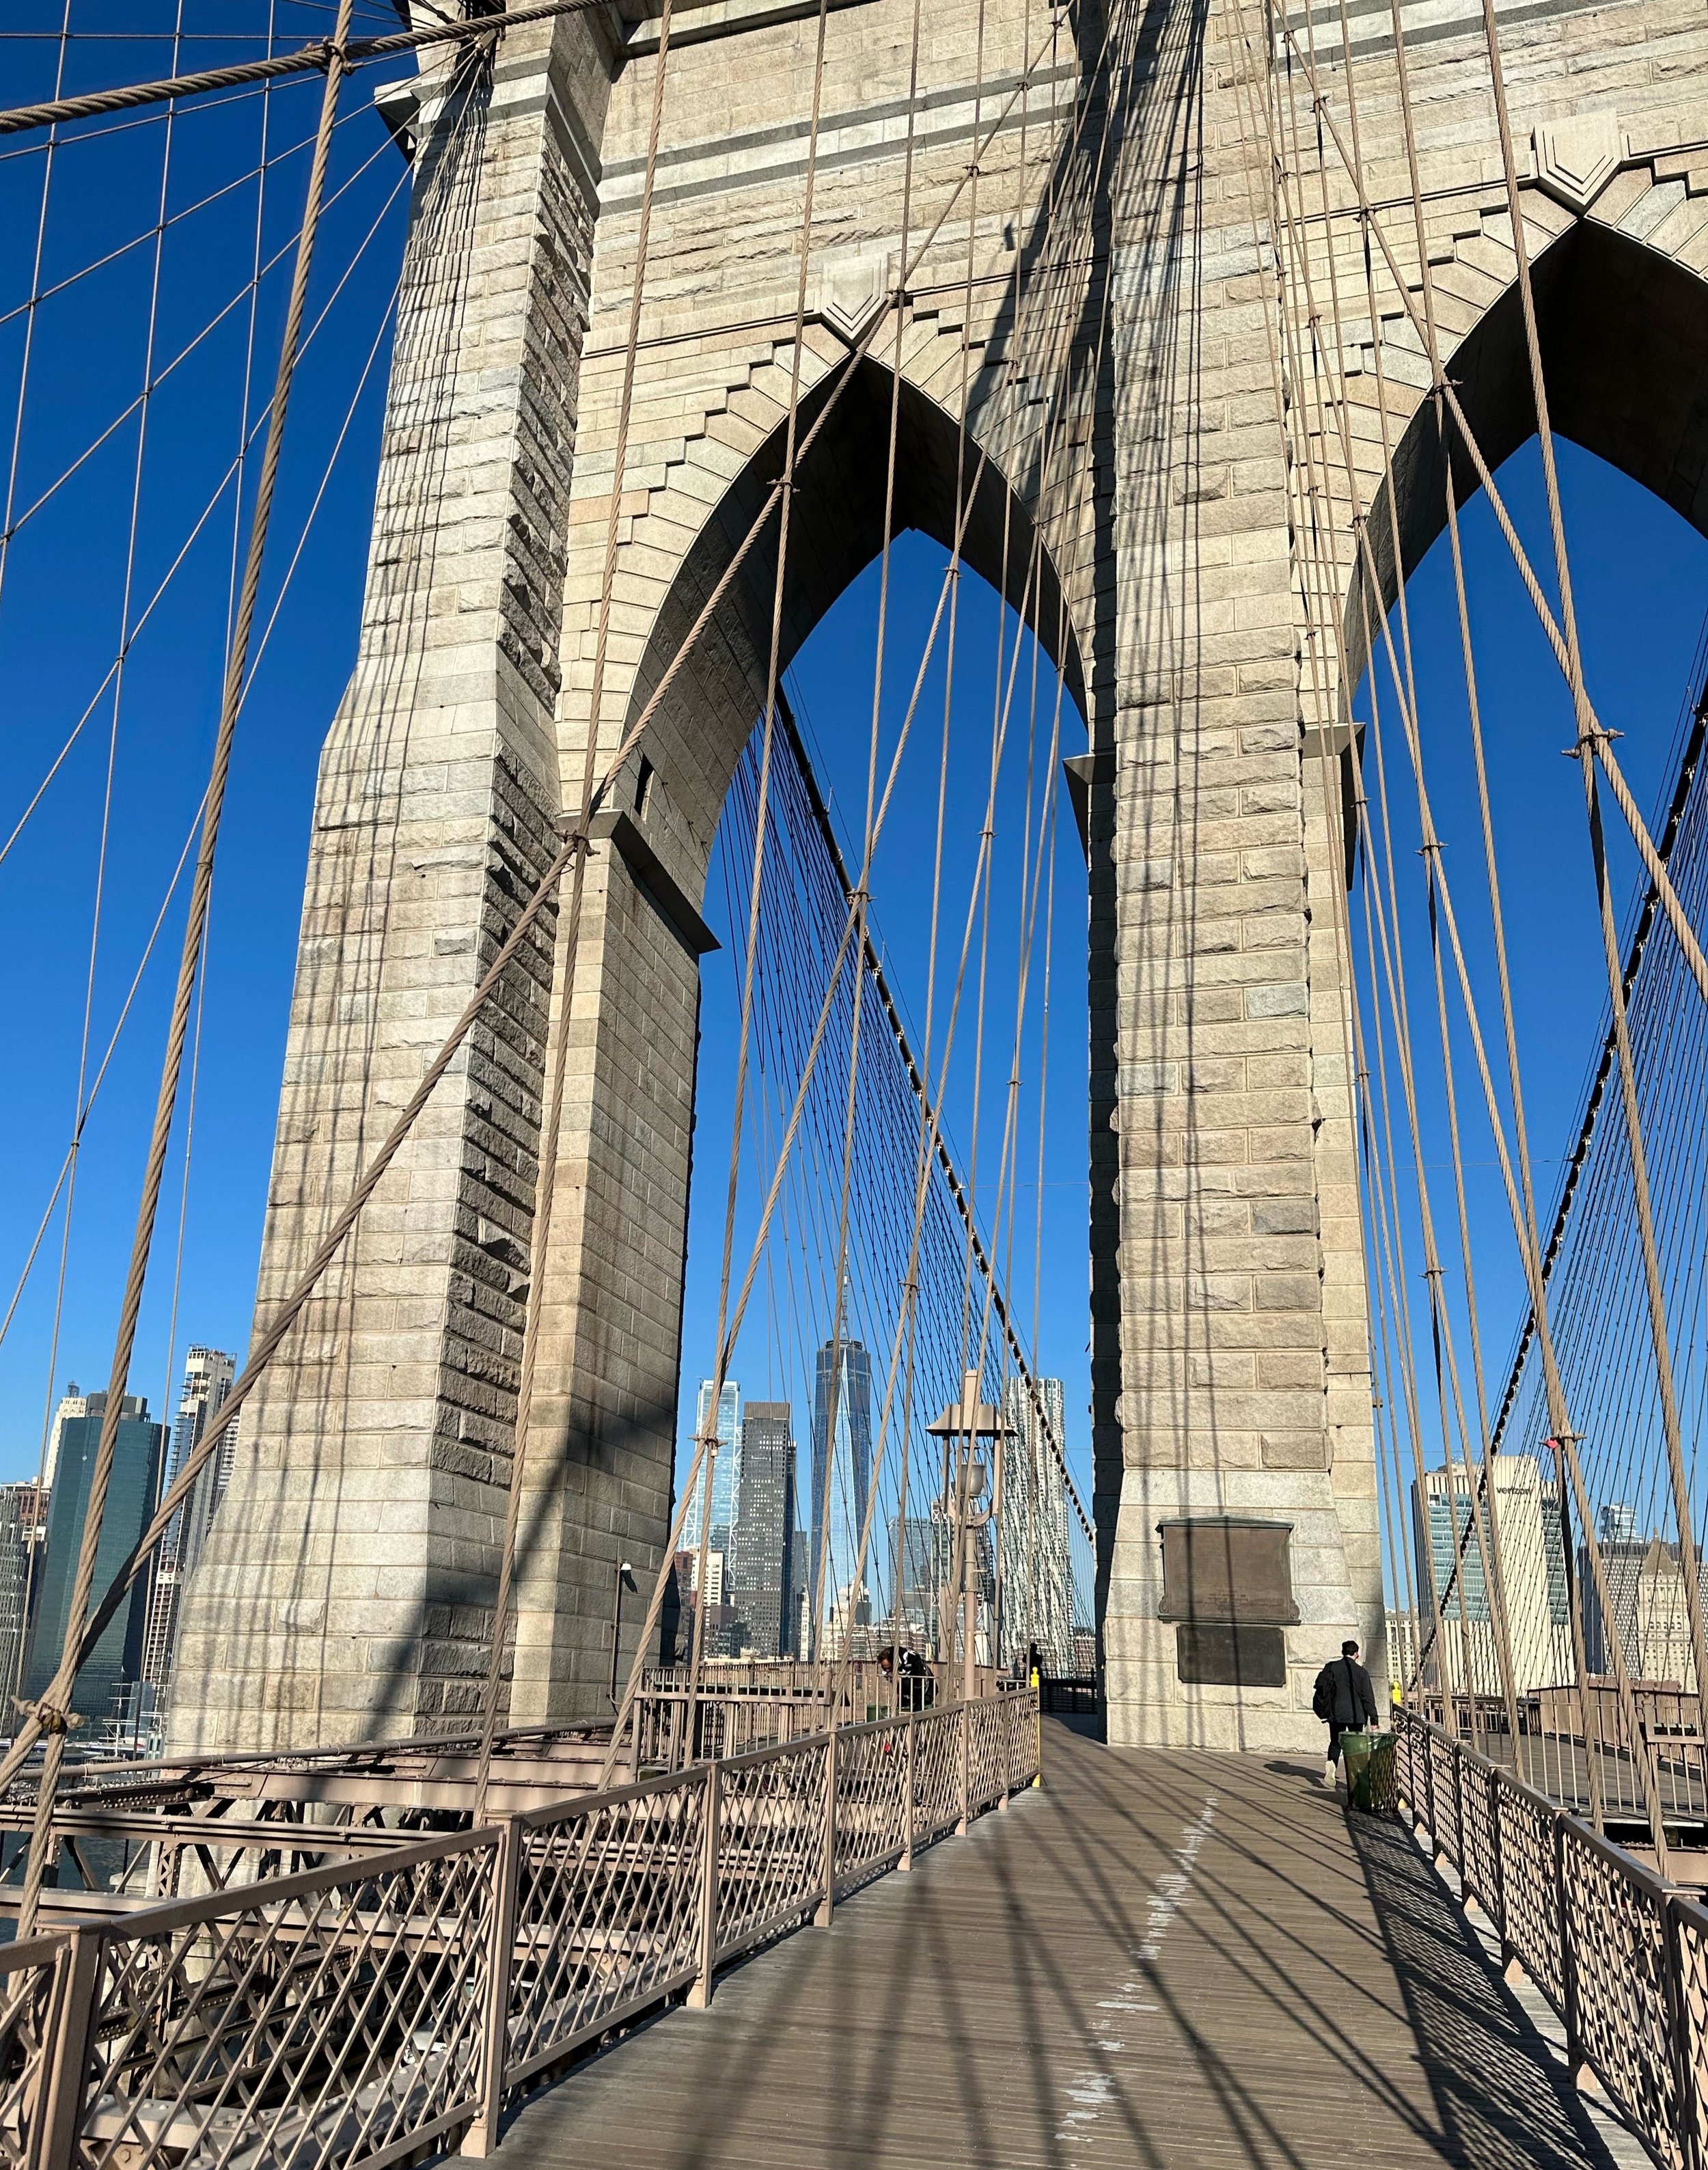 A photo taken by Scott while walking across the Brooklyn Bridge